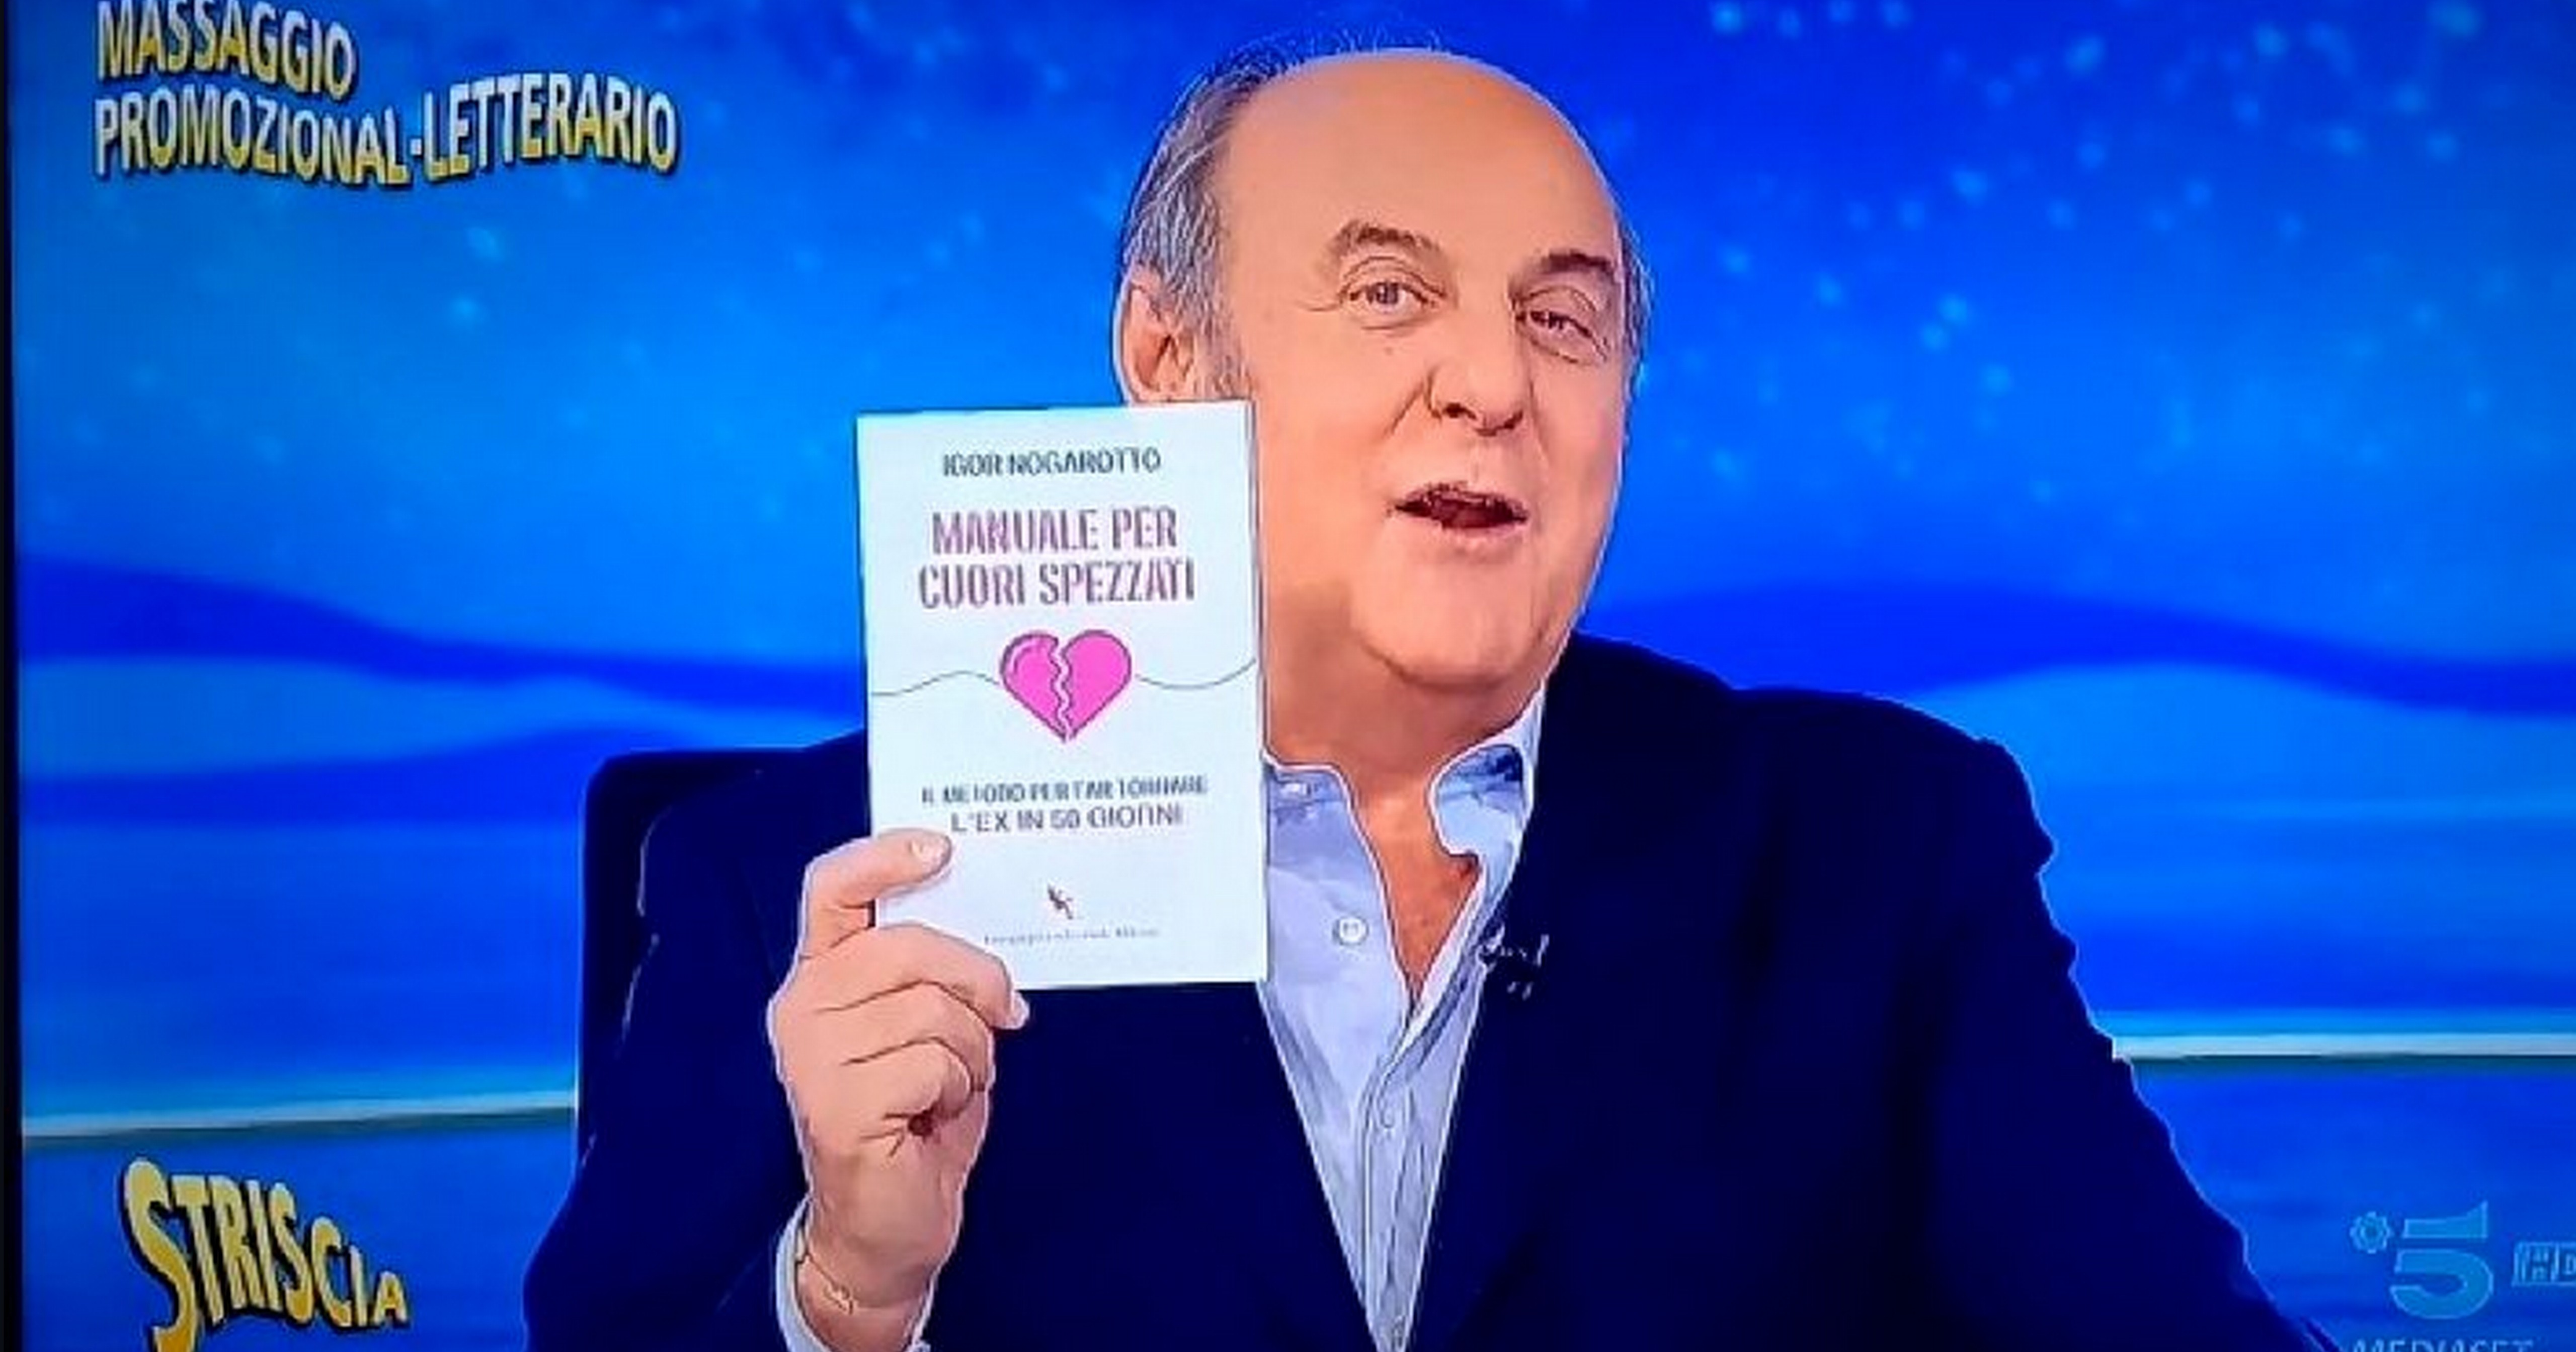 libro San Valentino Manuale per cuori spezzati Igor Nogarotto